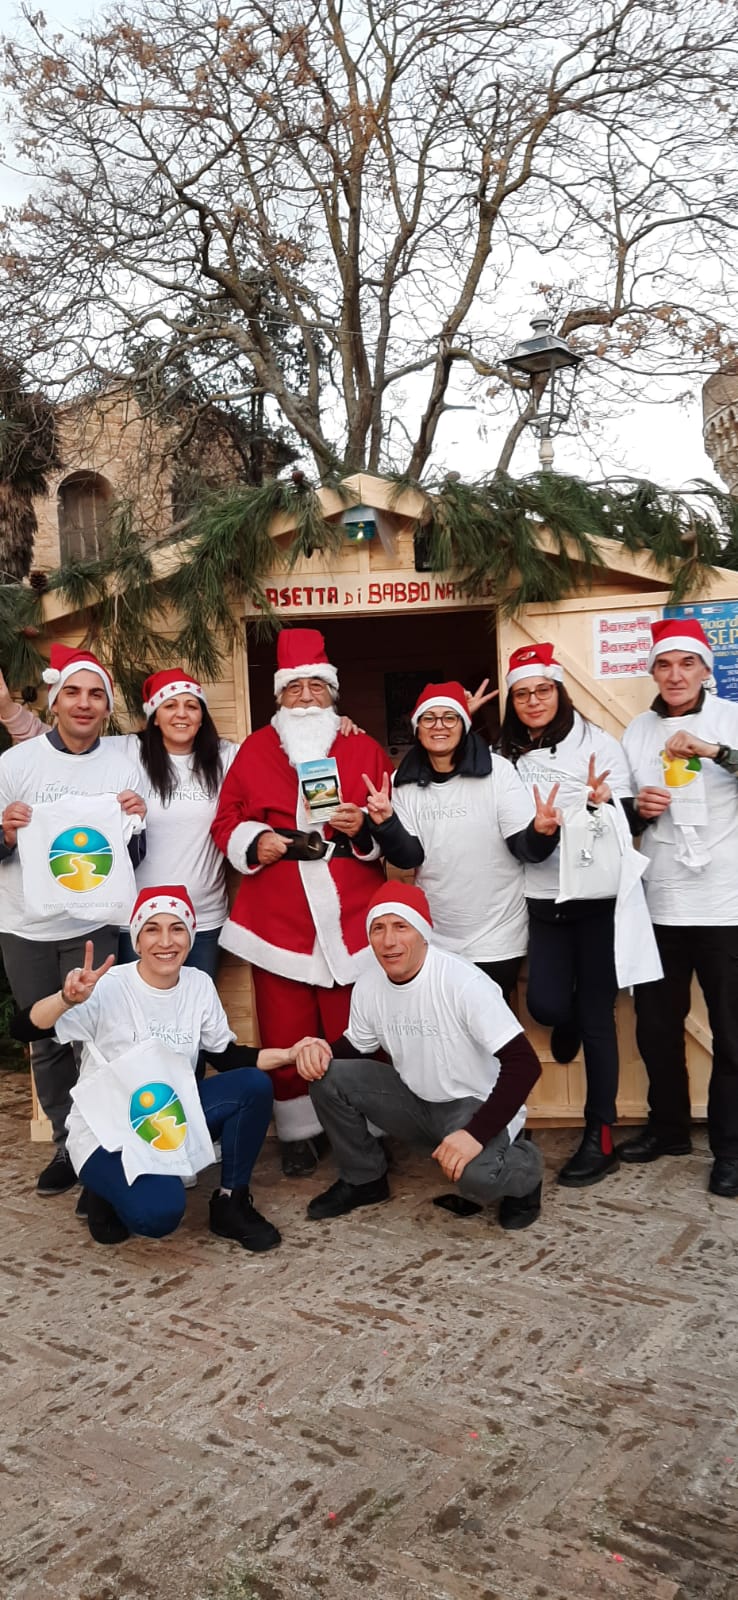 Anche quest’anno arriva il Natale… presenti anche i volontari a donare “La via della felicità”